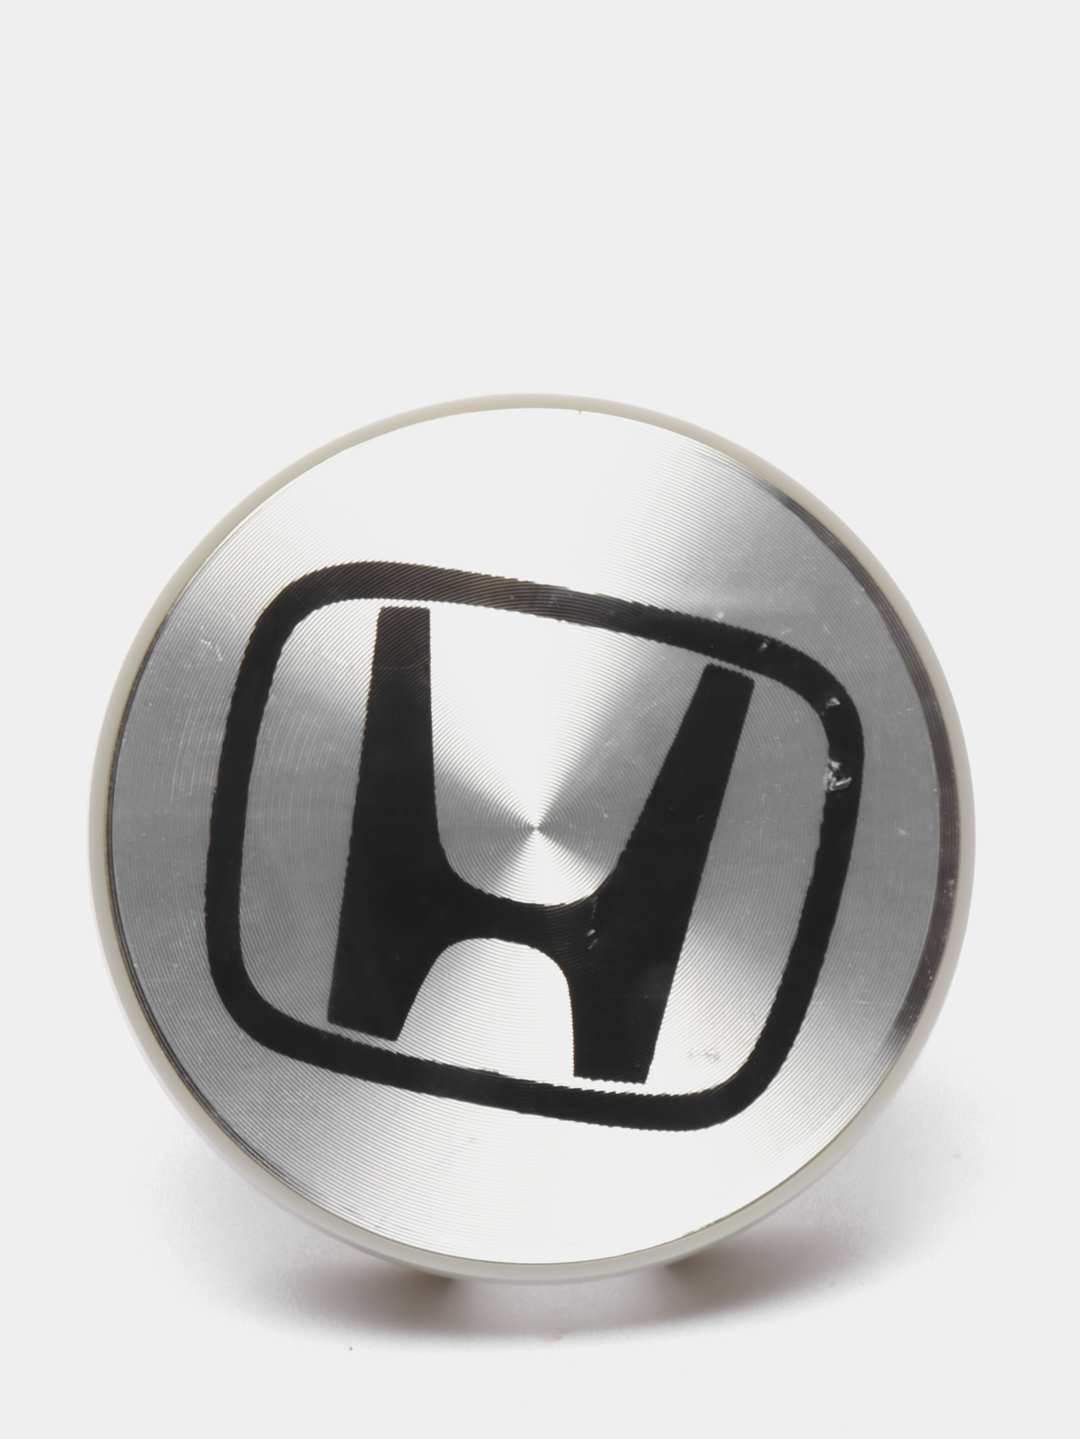 Колпачки honda. Ступичные колпачки. Заглушка Хонда. Динамические колпачки на хонду. Логотип Хонда на заглушки дисков колес.